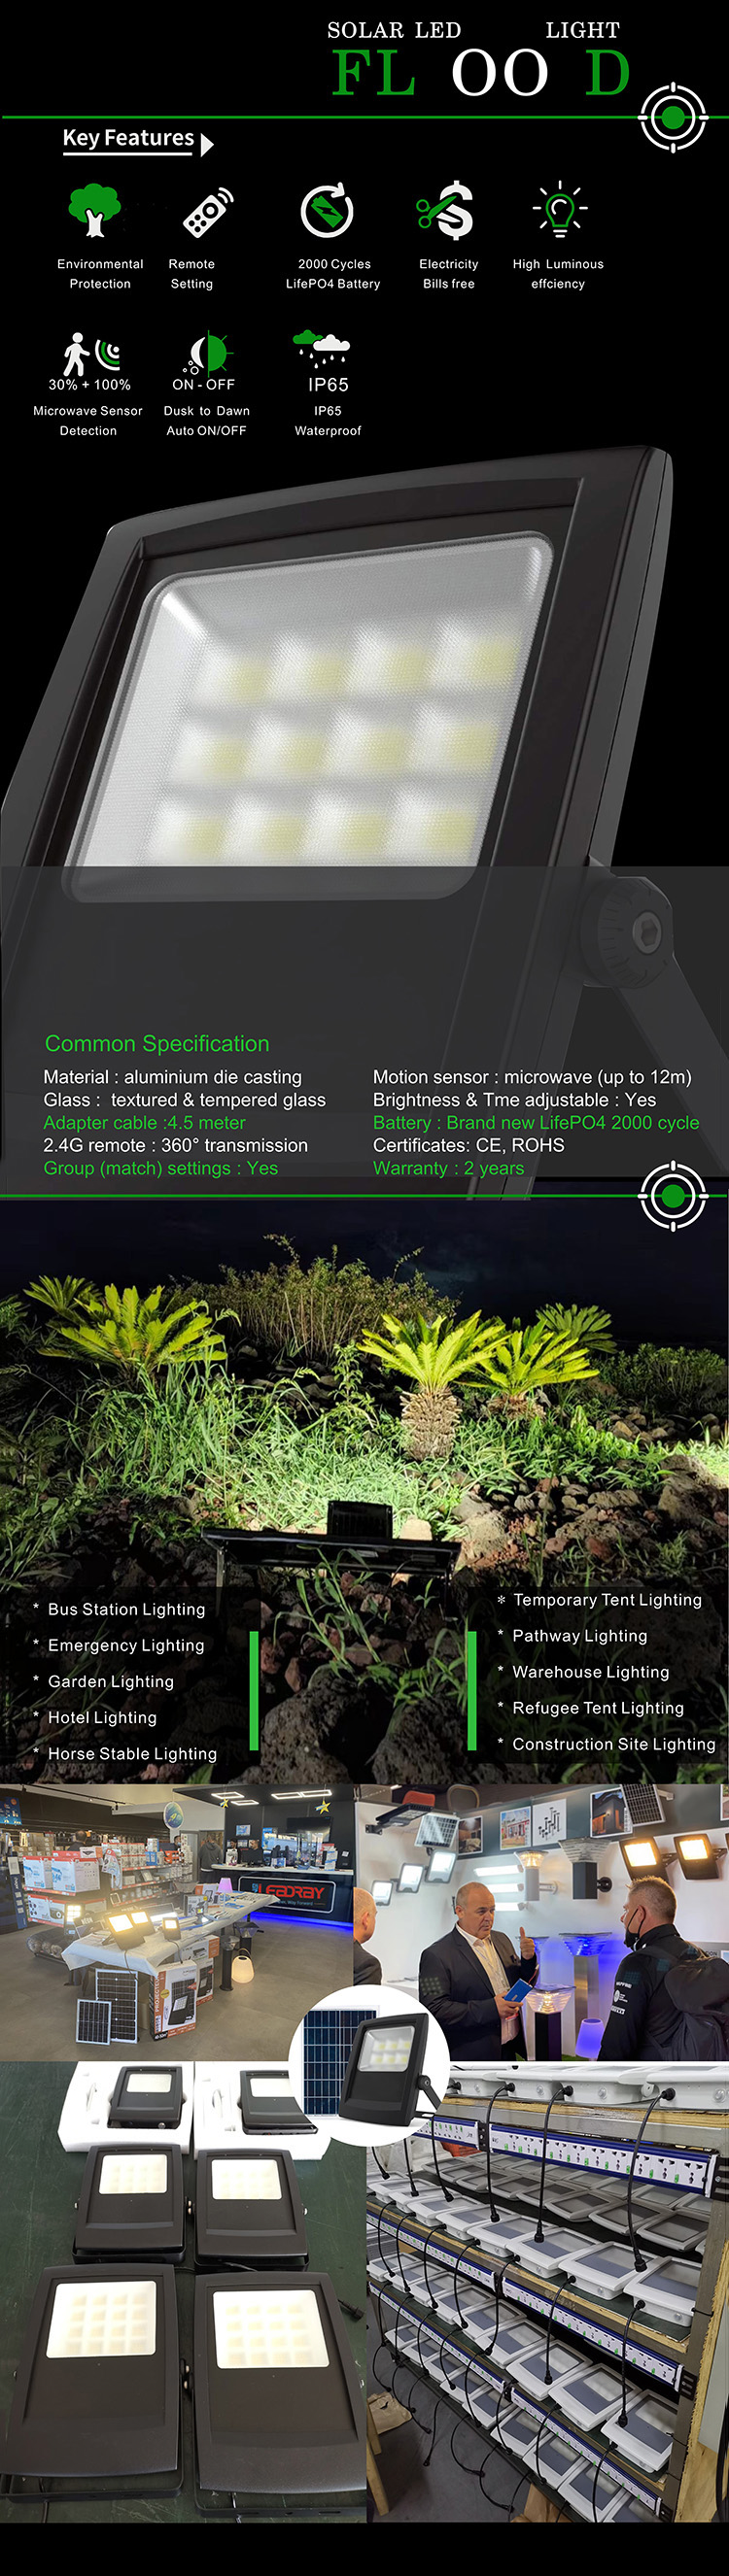 ضوء الفيضانات LED بالطاقة الشمسية الرخيصة لإضاءة الحدائق